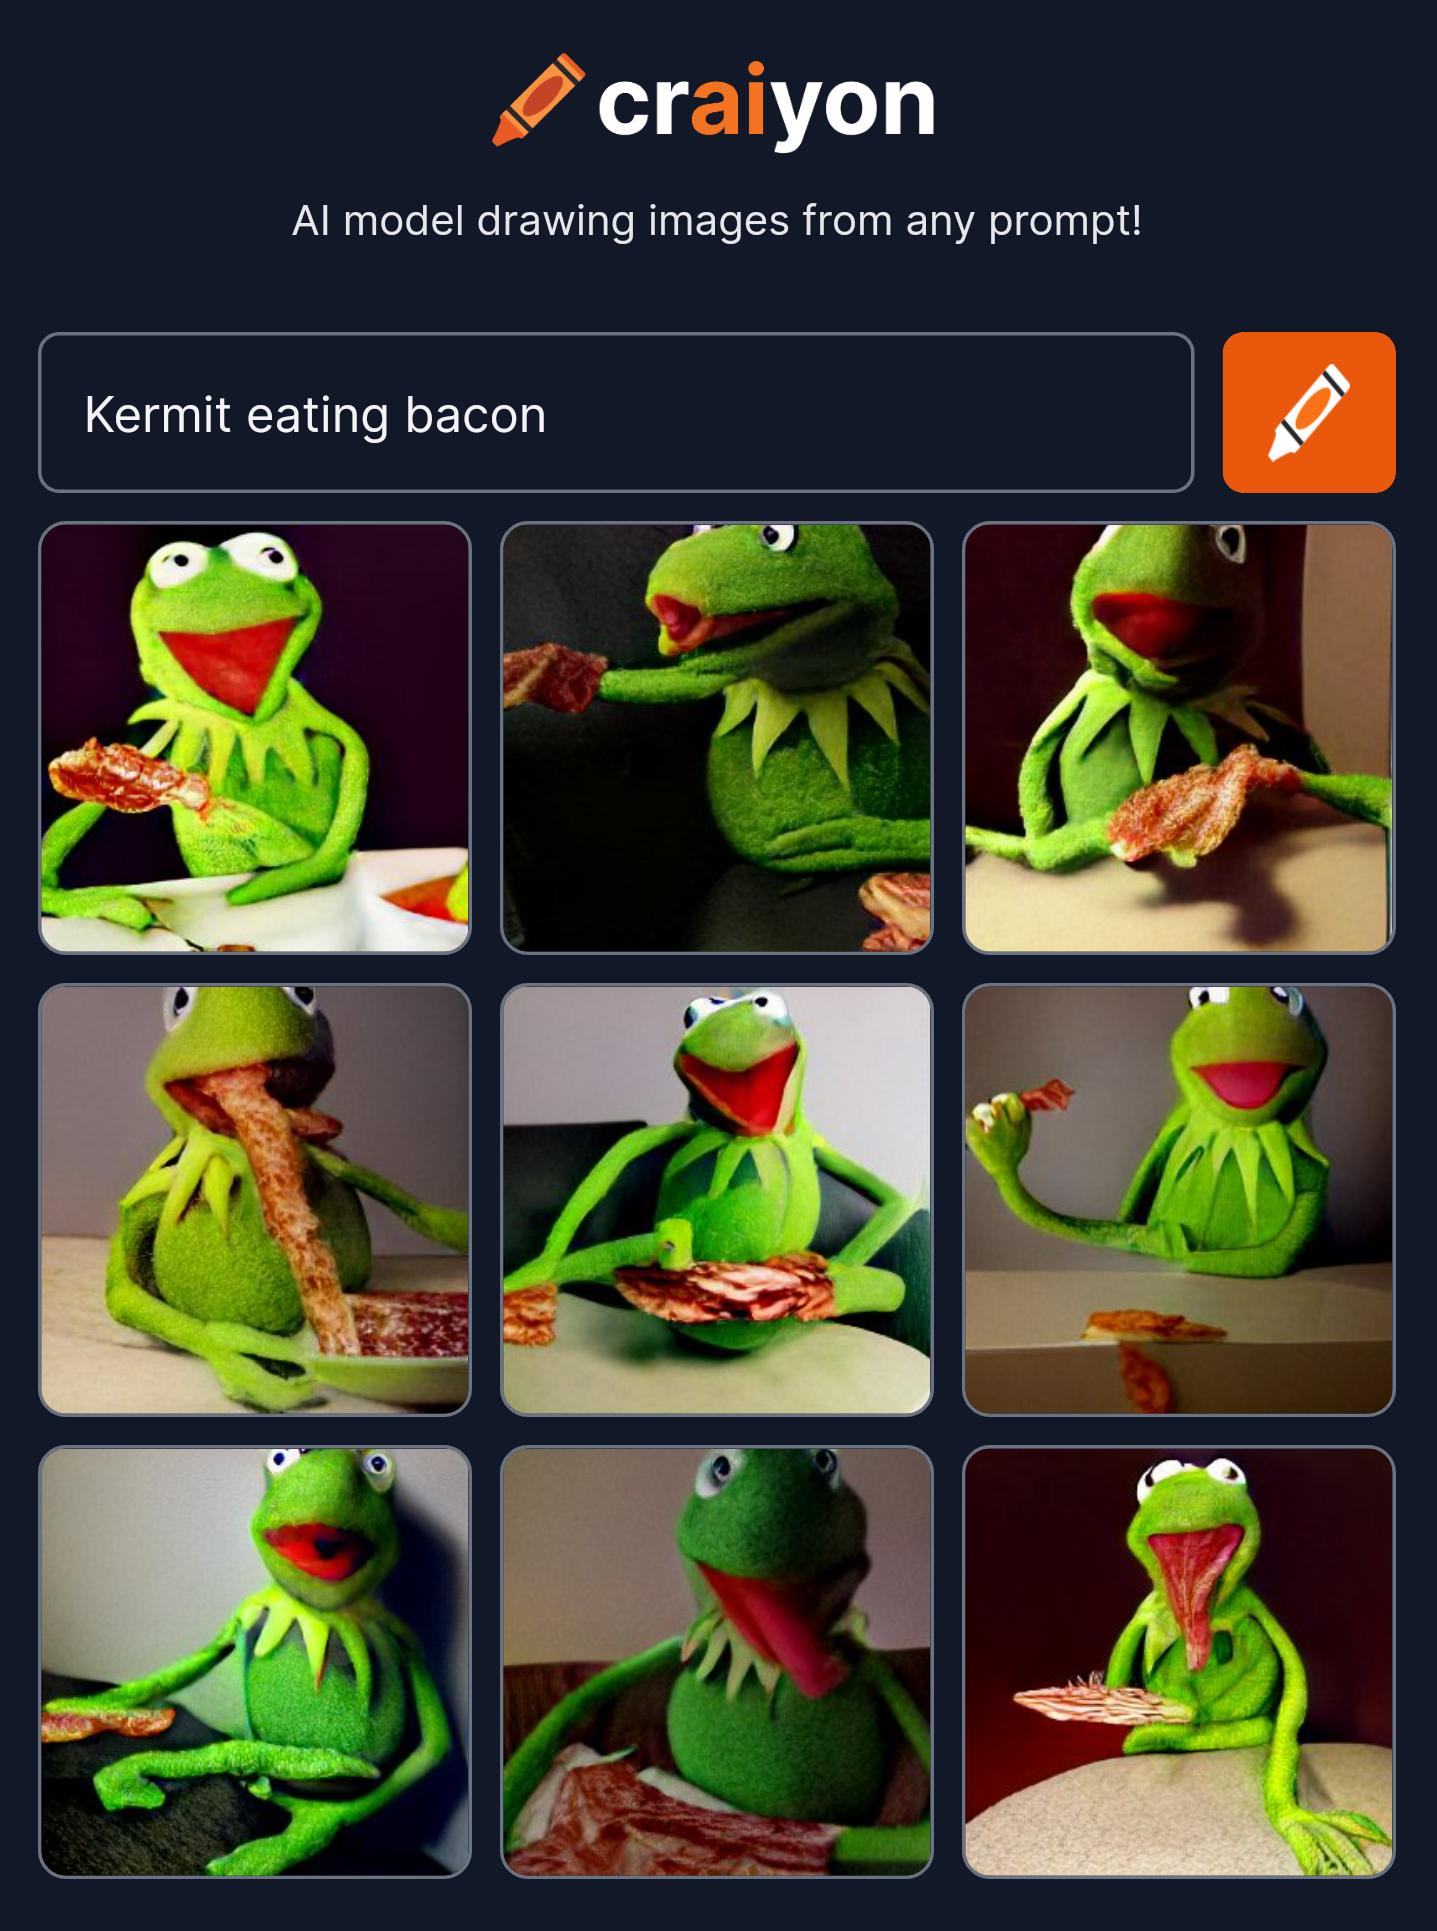 craiyon_204443_Kermit_eating_bacon.png